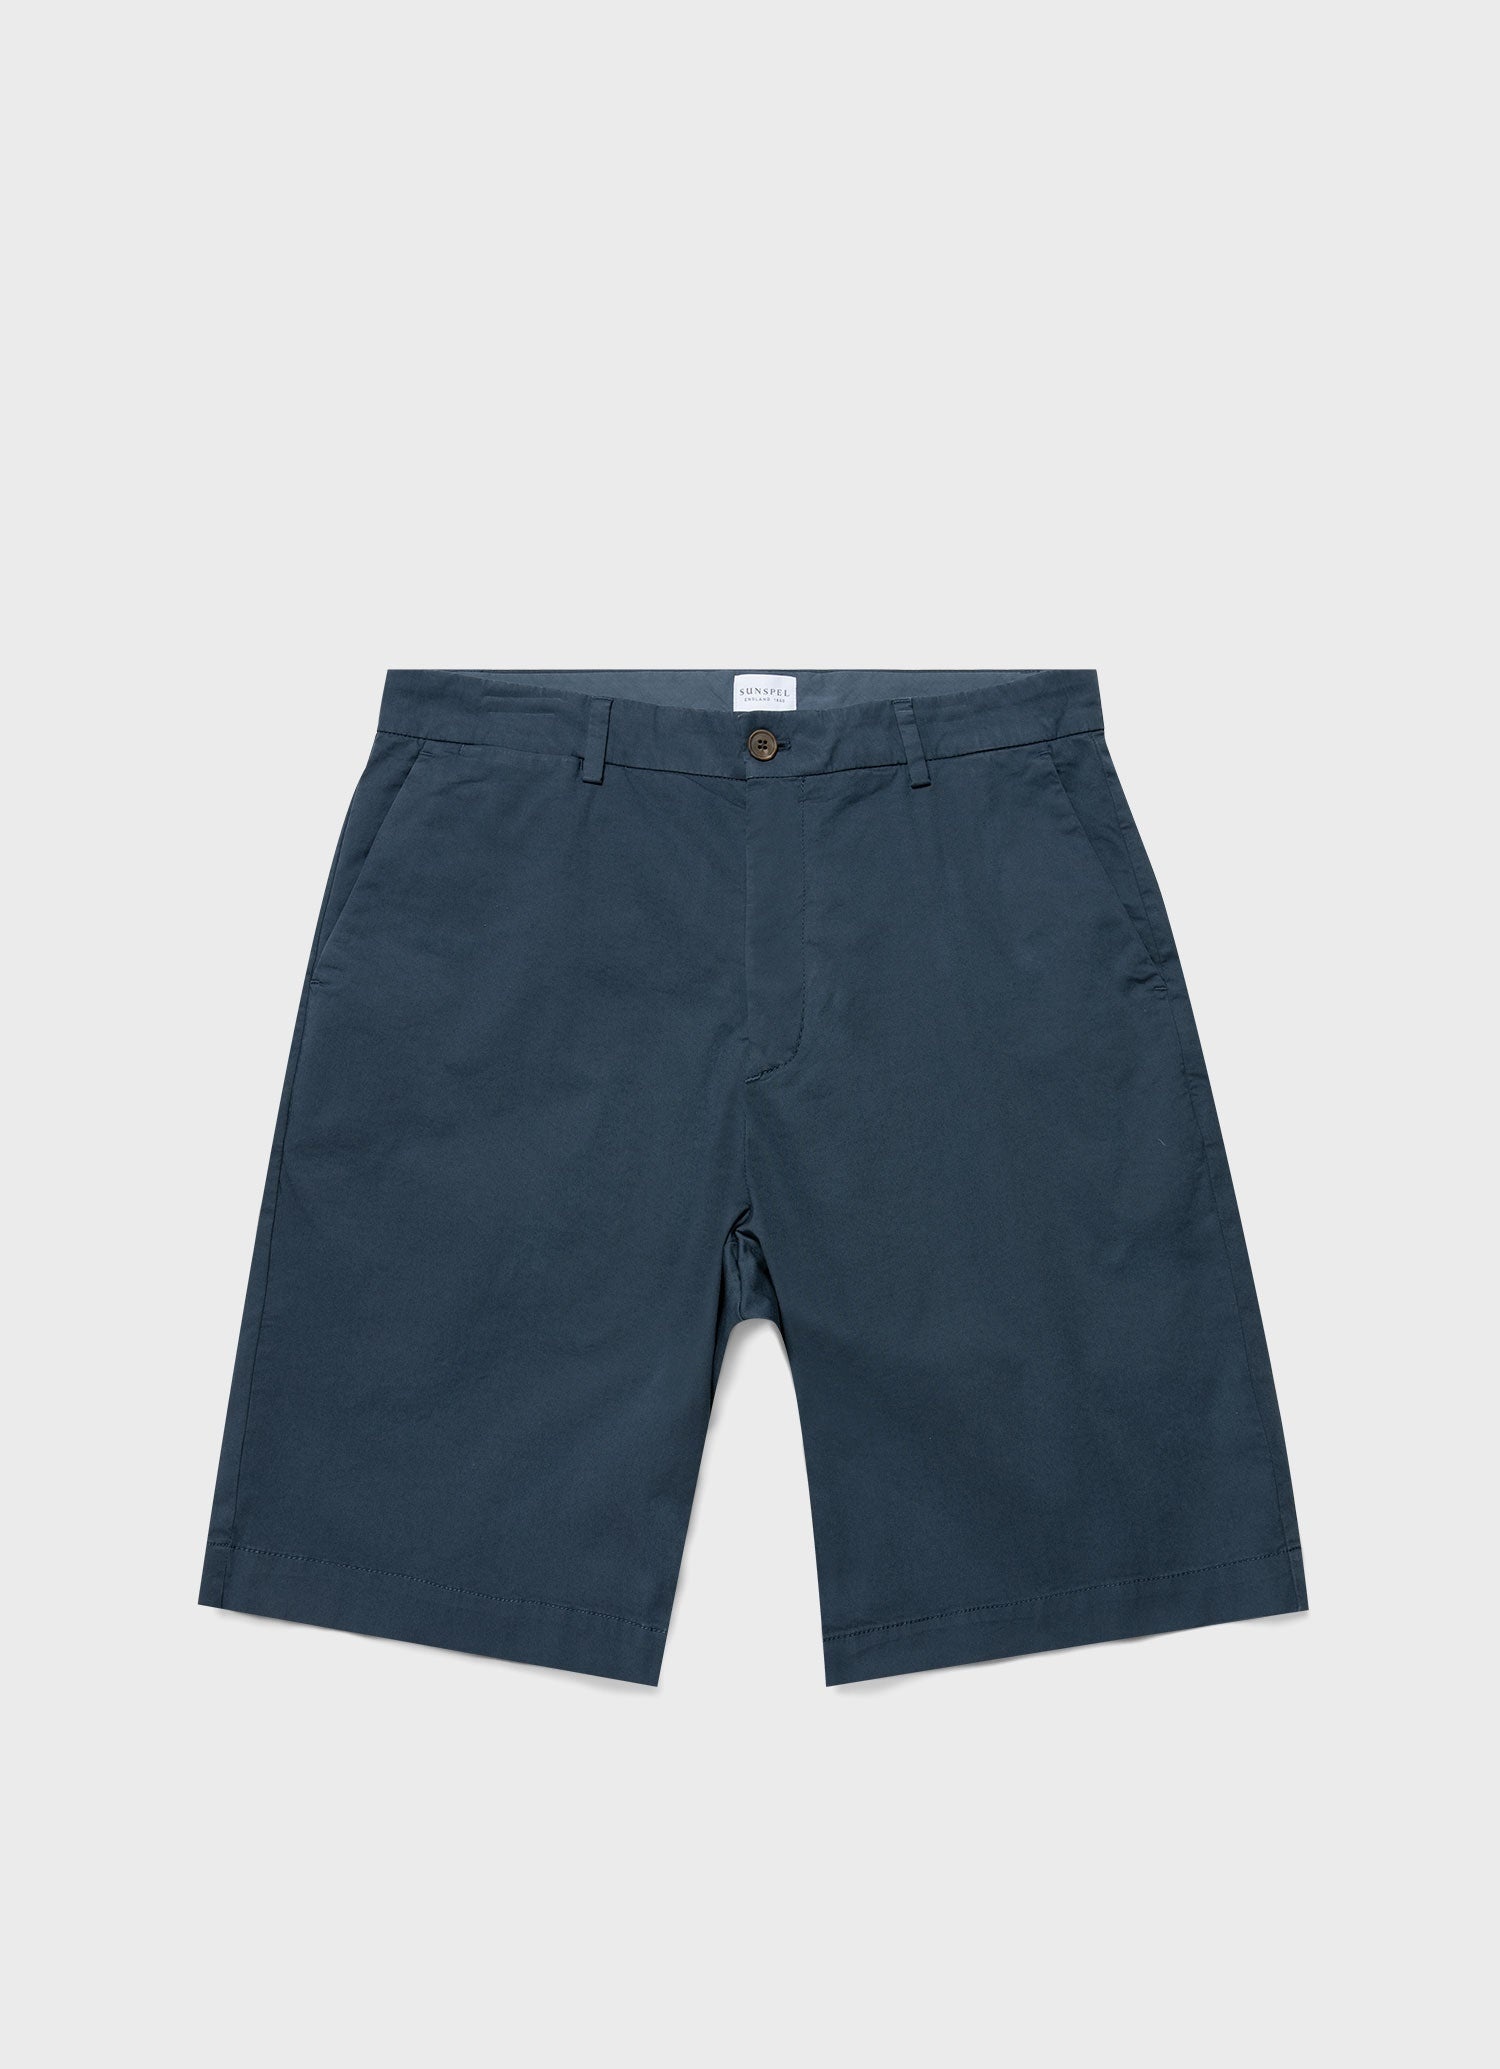 Classic Chino Shorts - 1